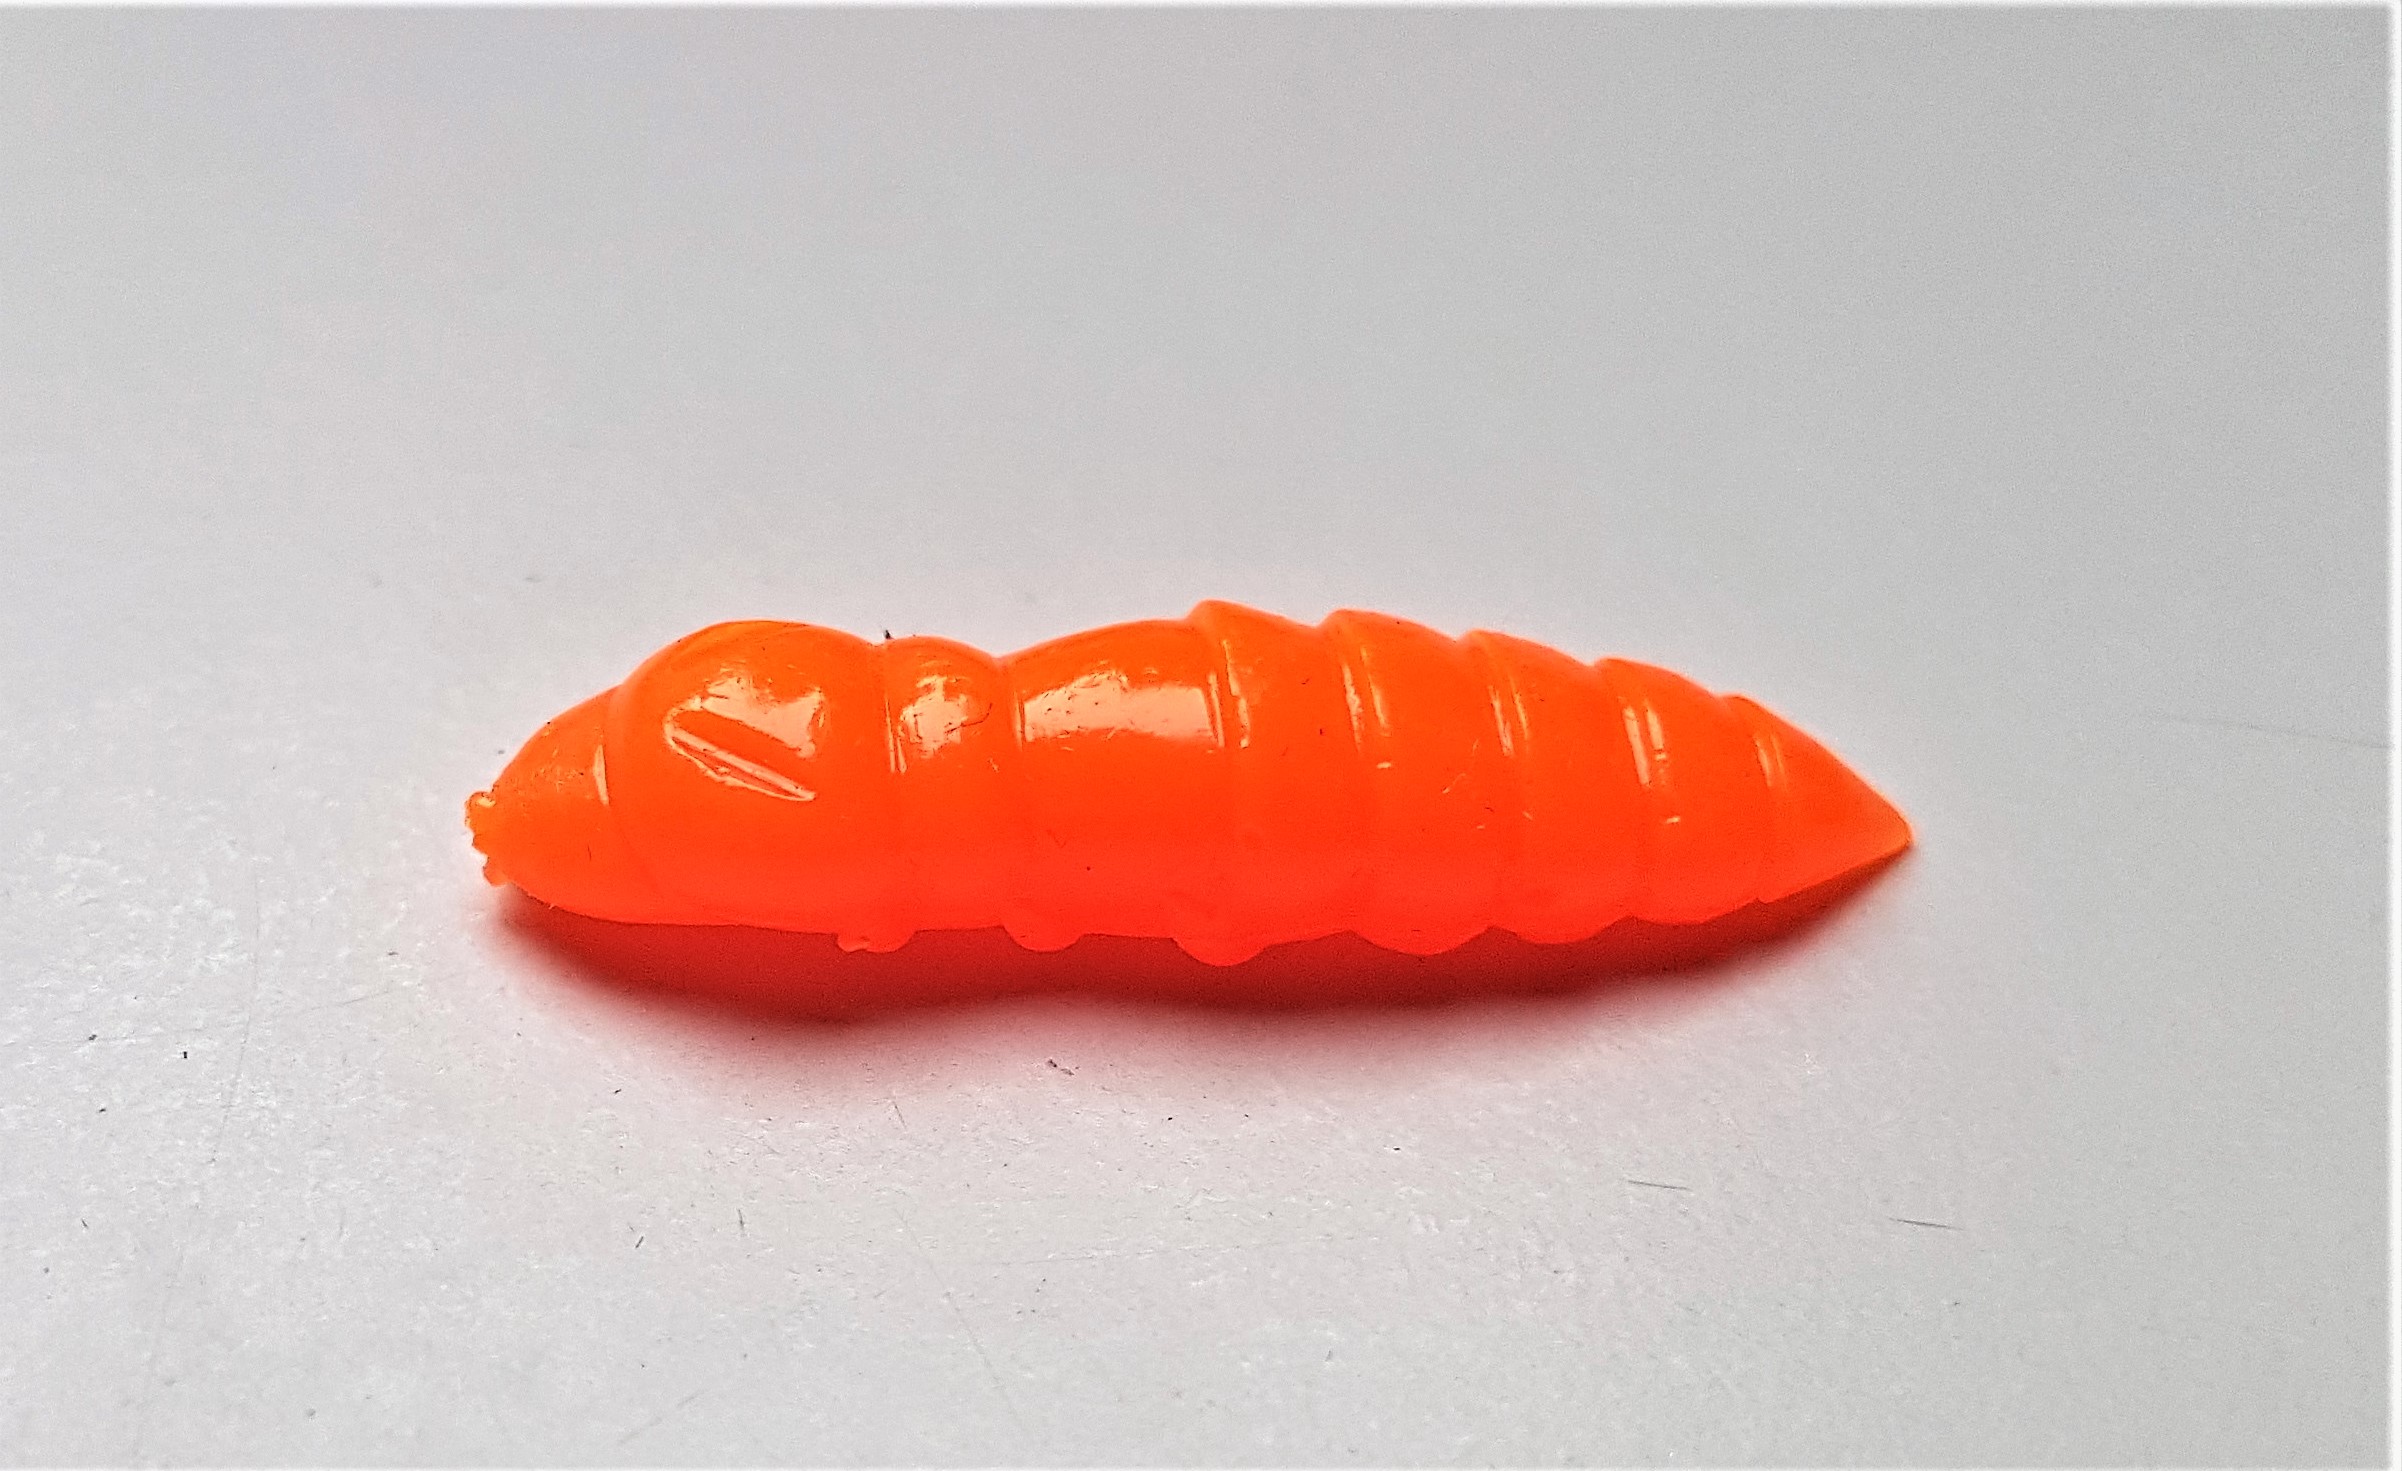 FishUp Pupa 1.2 Mit Käsearoma – Softbait Für Forelle Und Barsch In 3 Cm – Farbe: Hot Orange